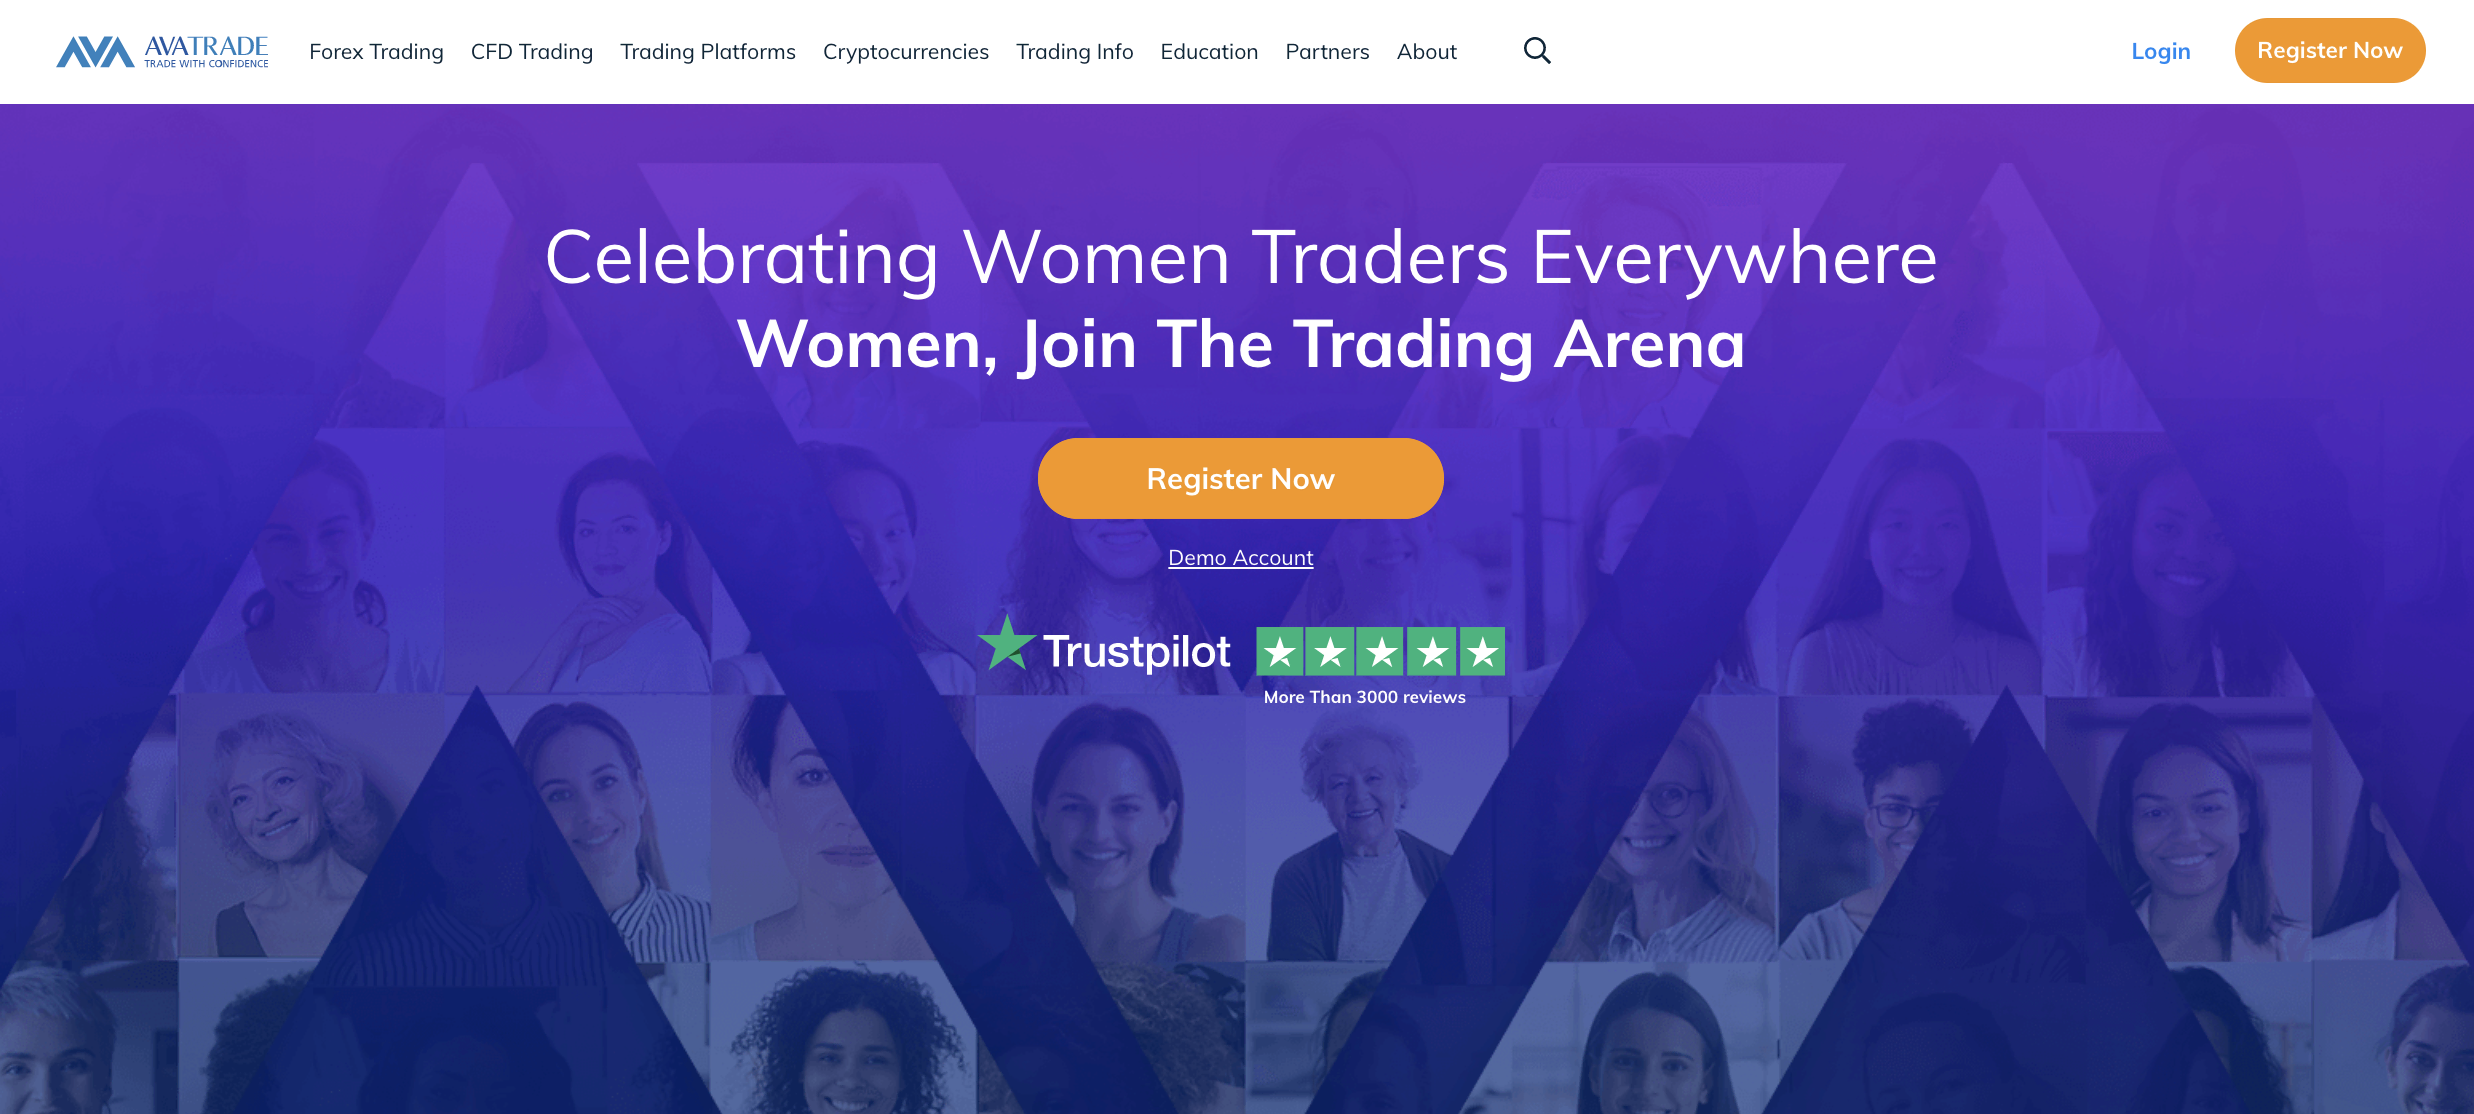 AvaTradeの公式サイト。国際女性の日やその他のお祝いのように、ここには時々スペシャルがあります。